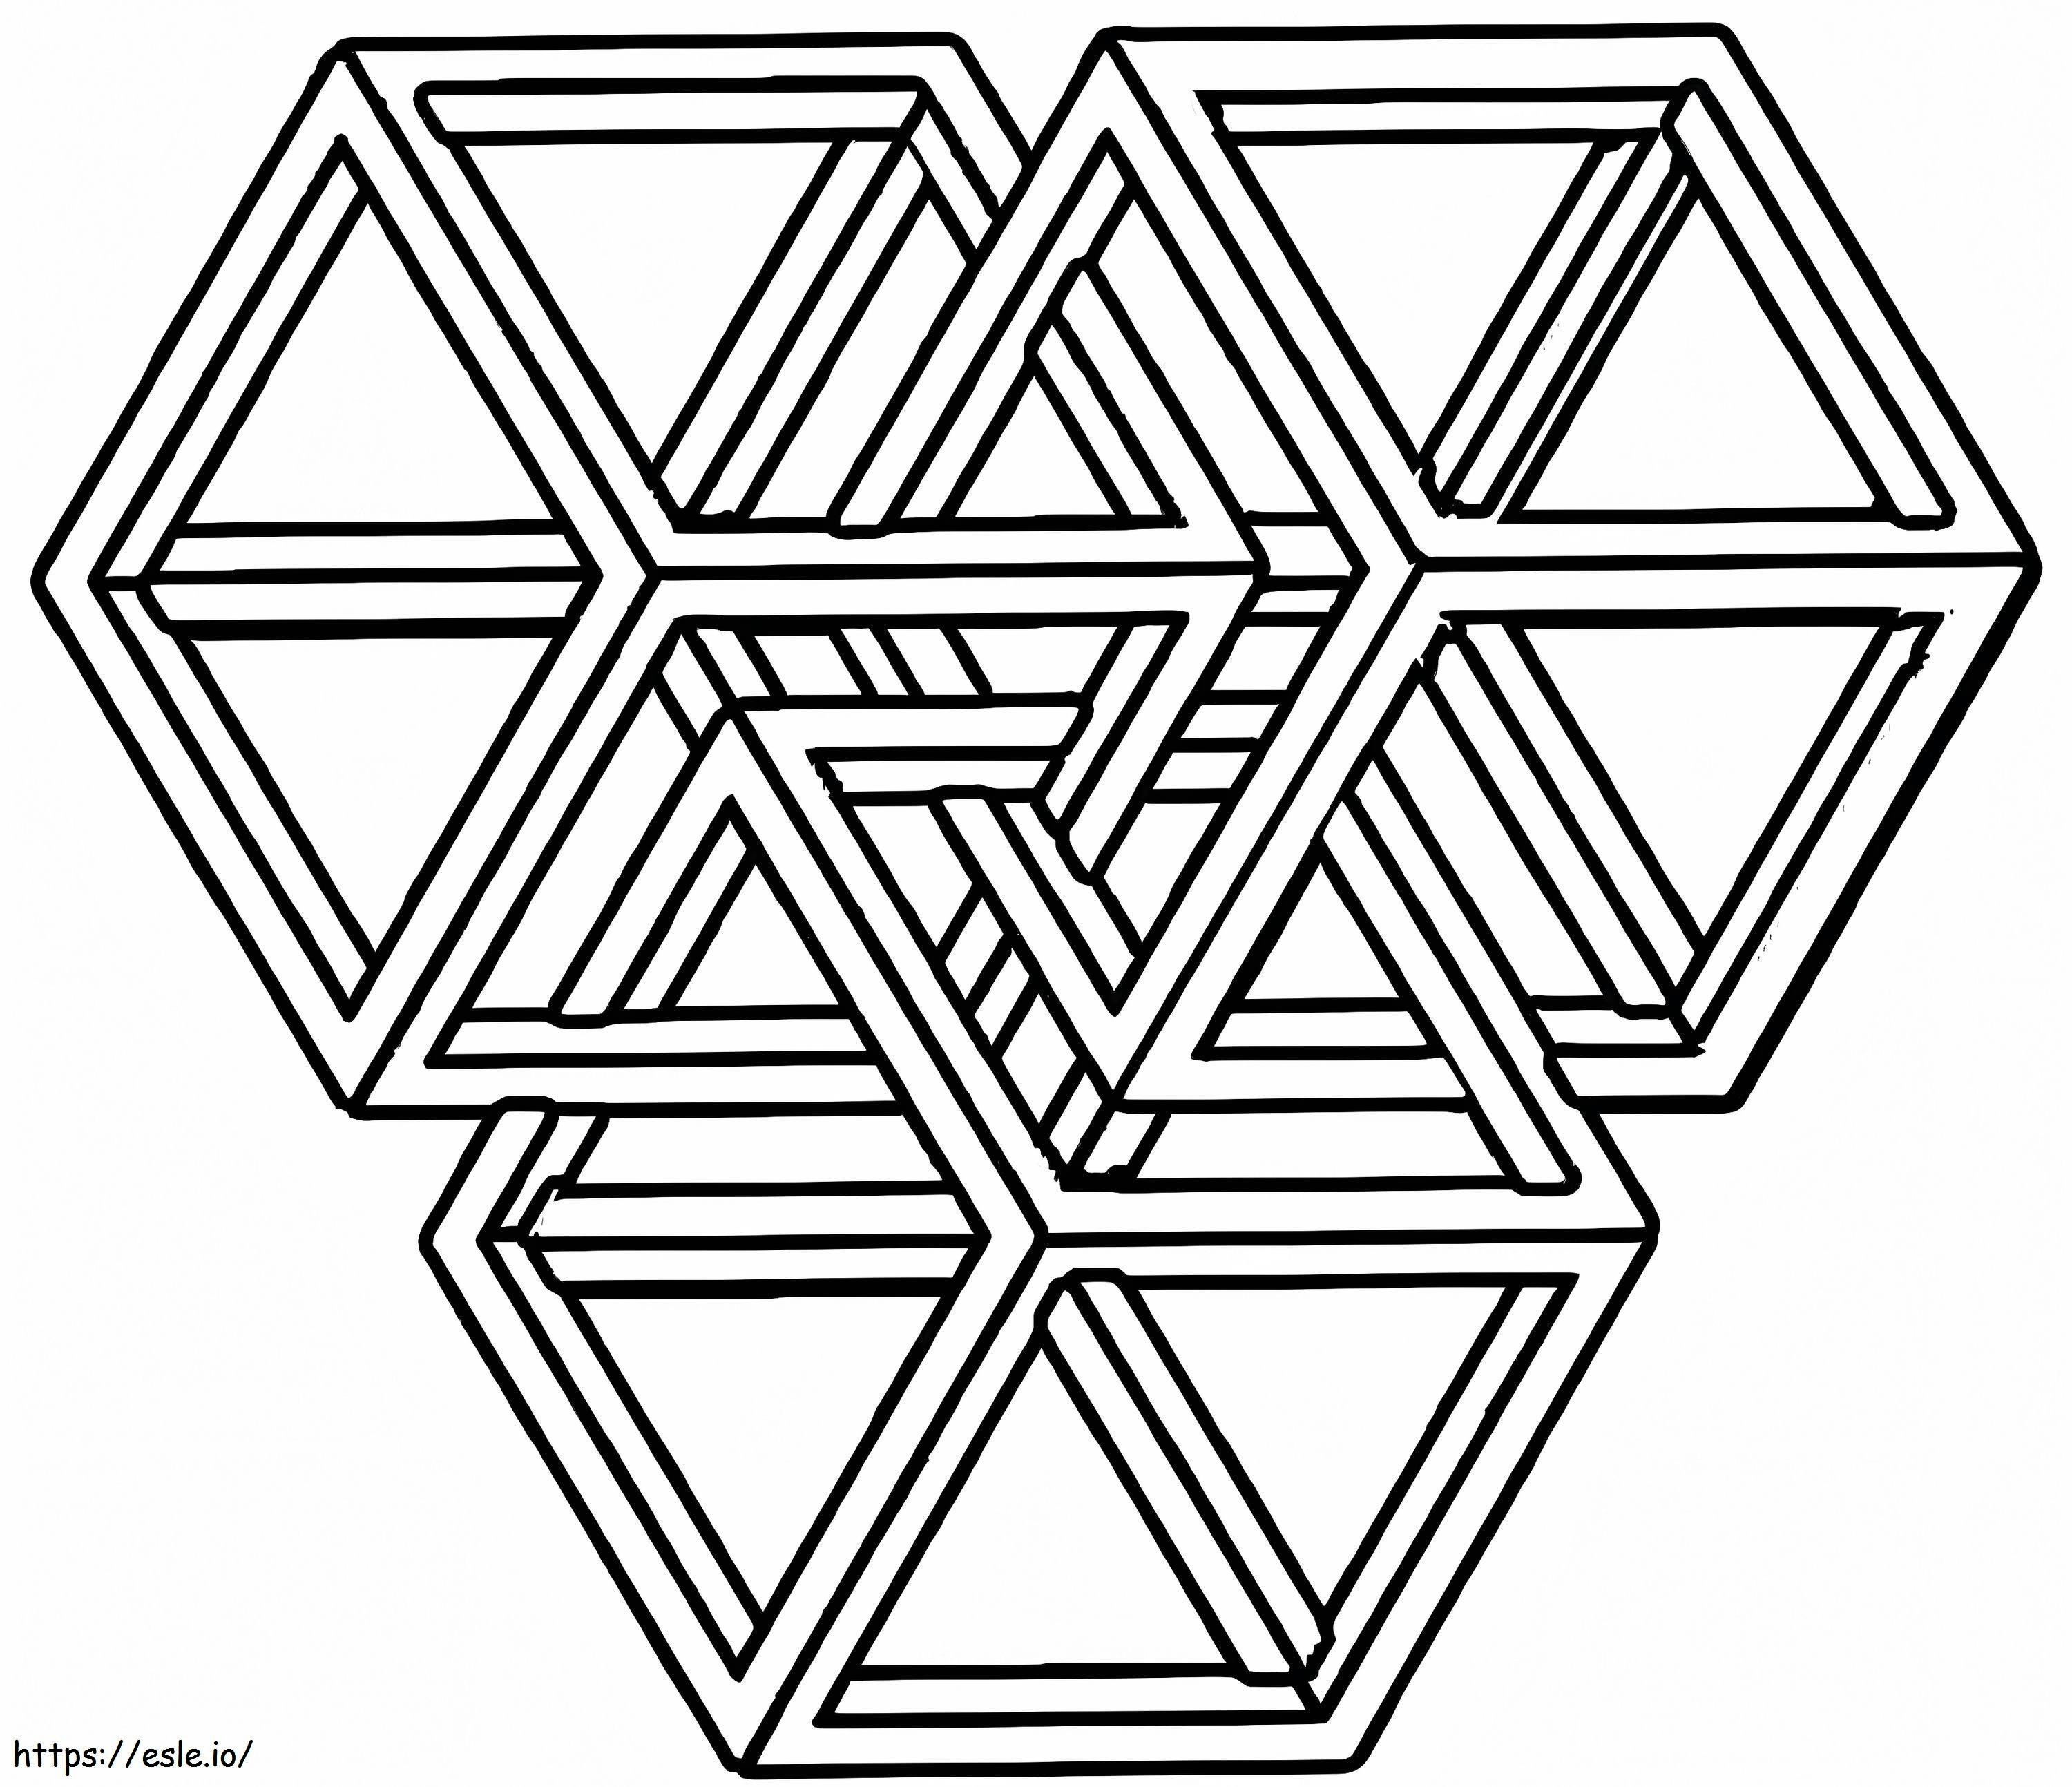 Coloriage Labyrinthe hexagonal à imprimer dessin